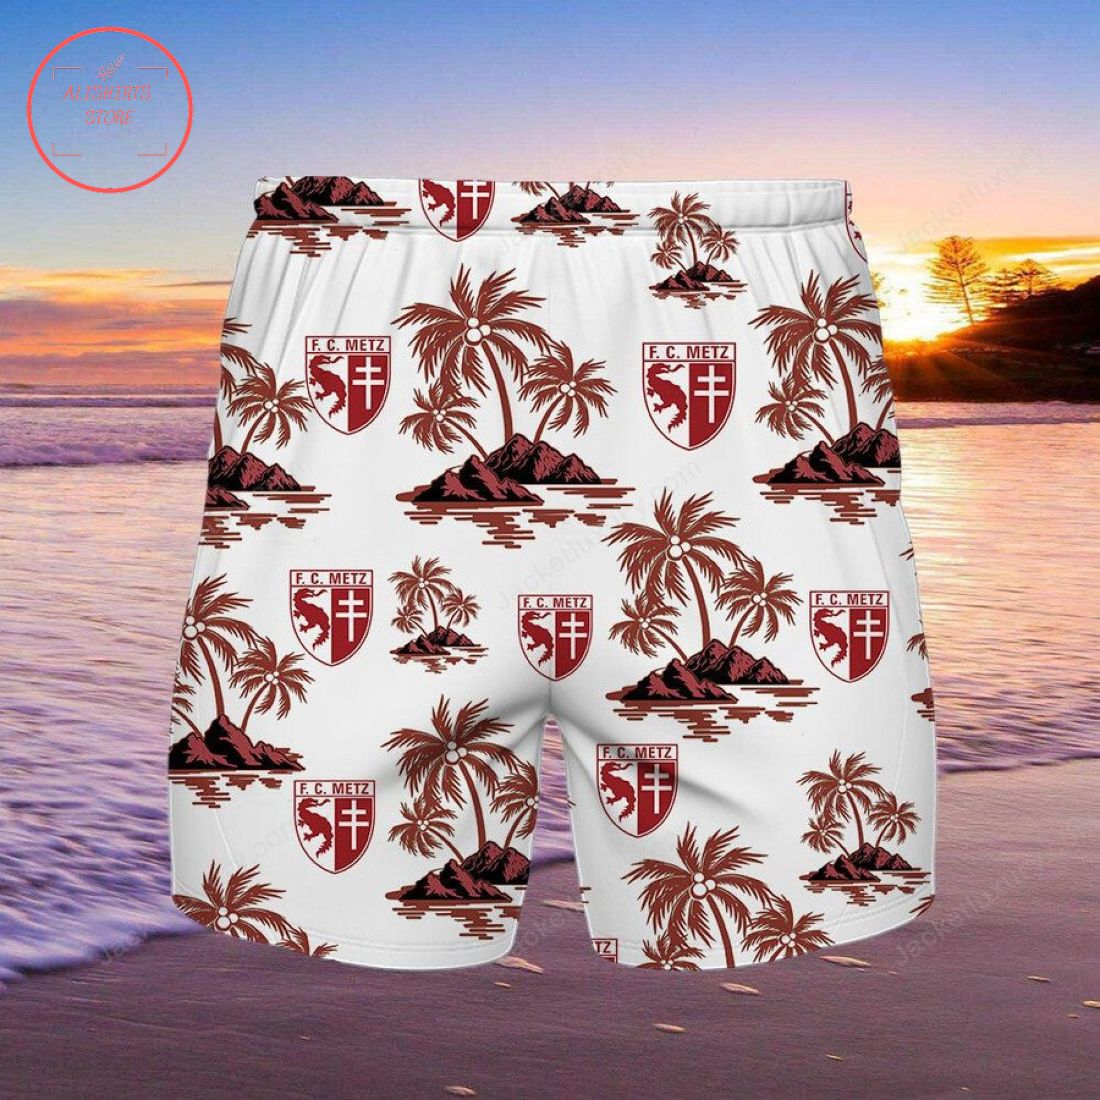 FC Metz Hawaiian shirt and shorts